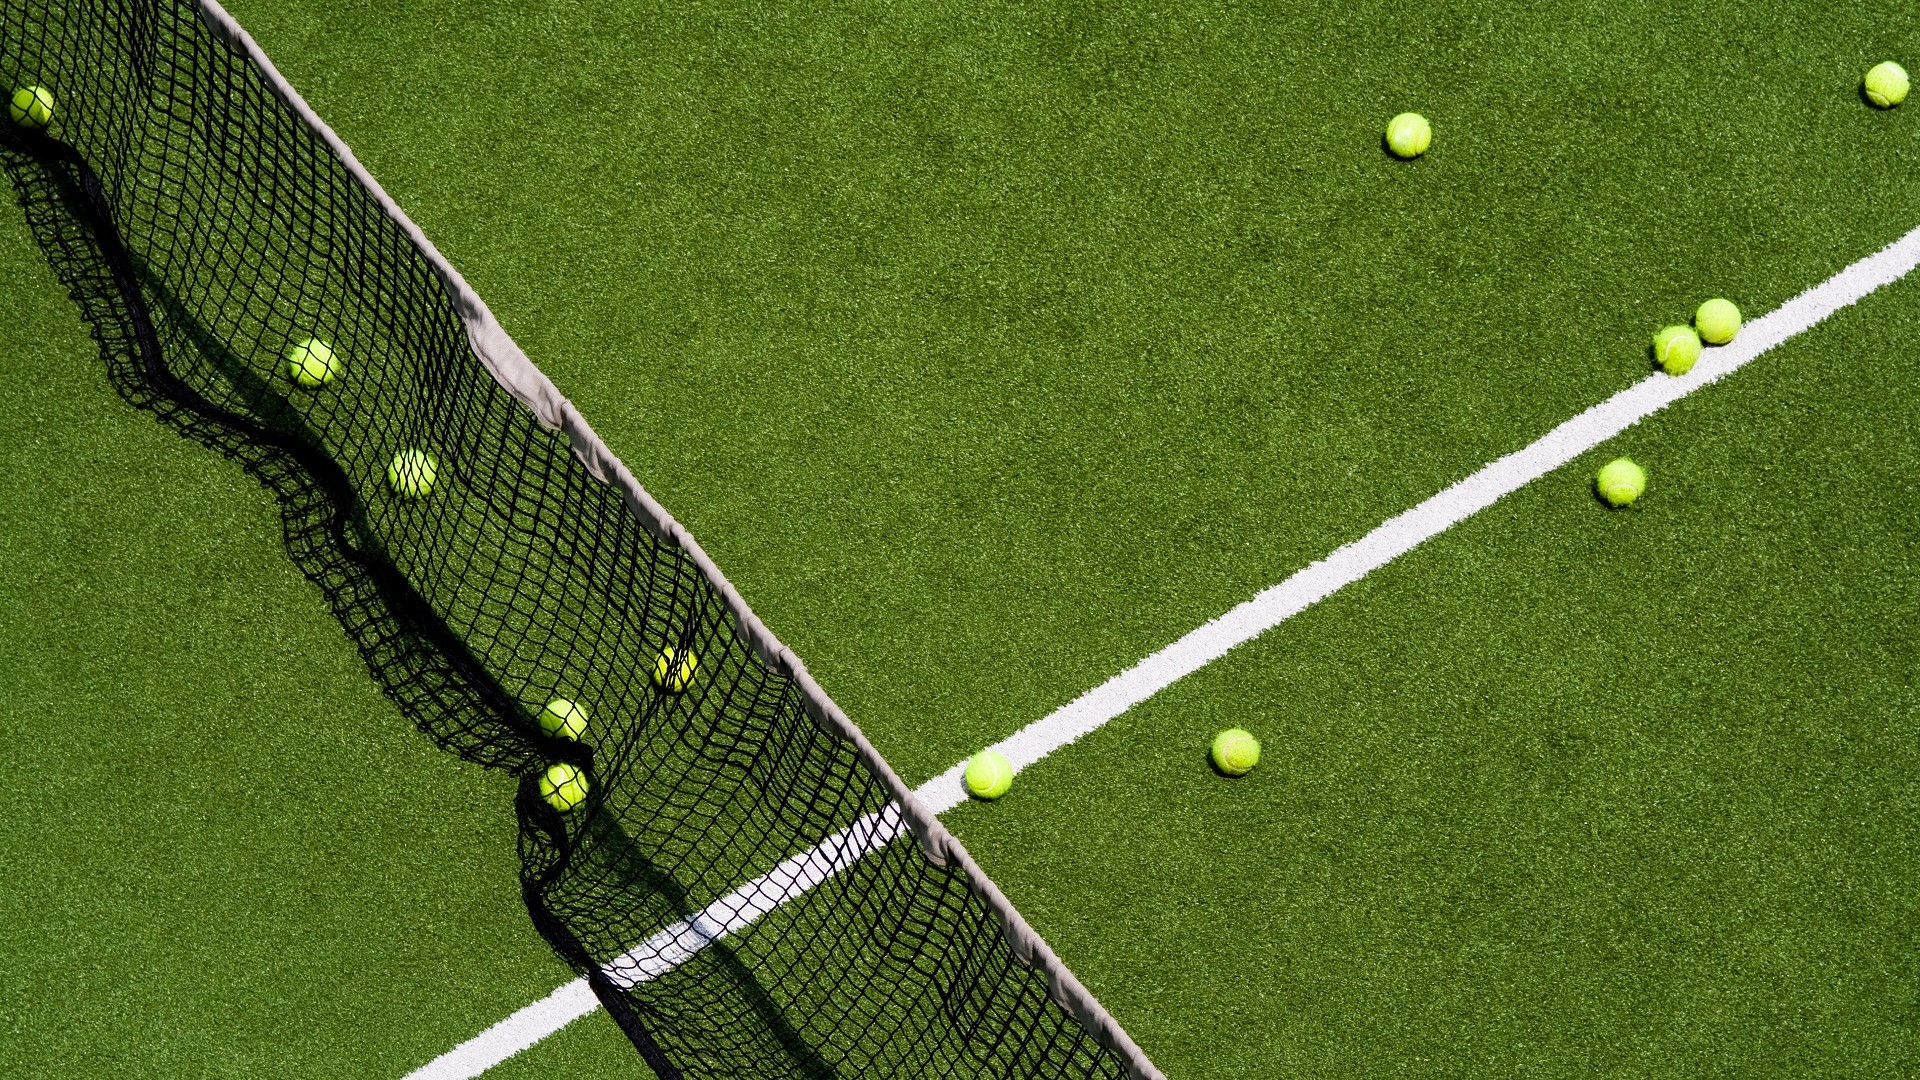 grass tennis court with tennis balls